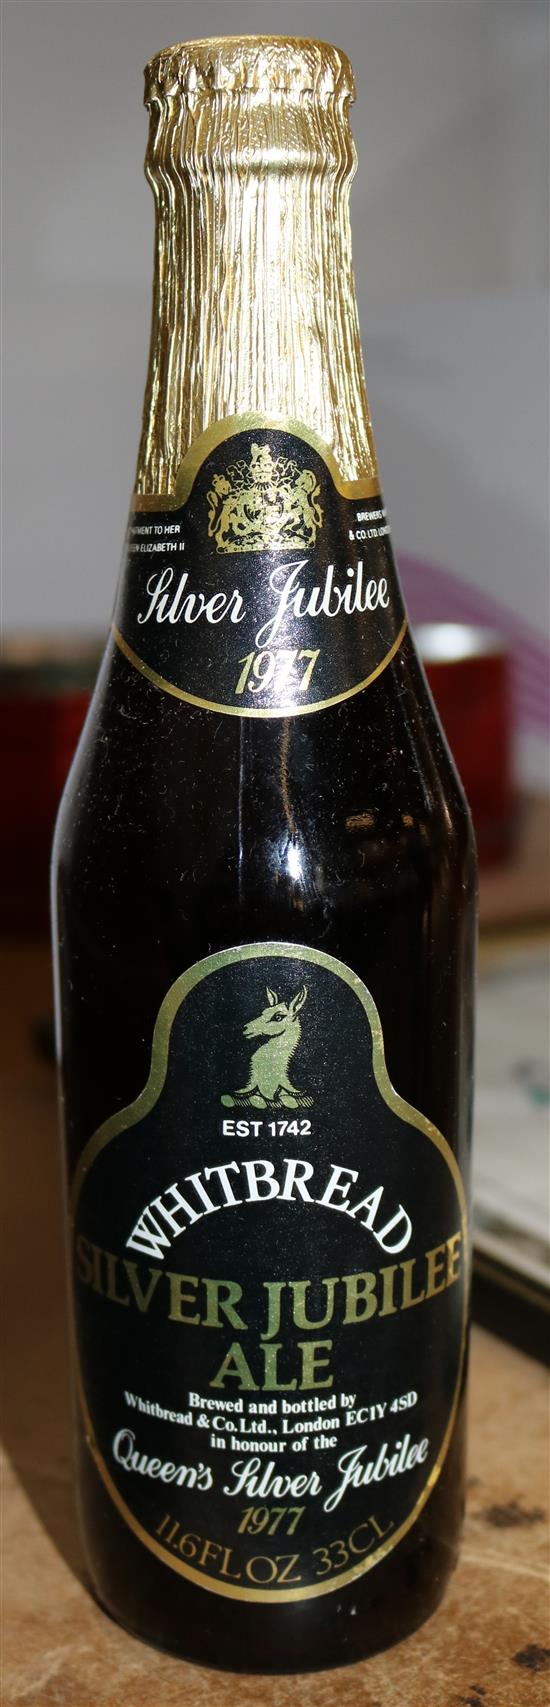 20 Whitbread bottles of silver Jubilee ale 1977